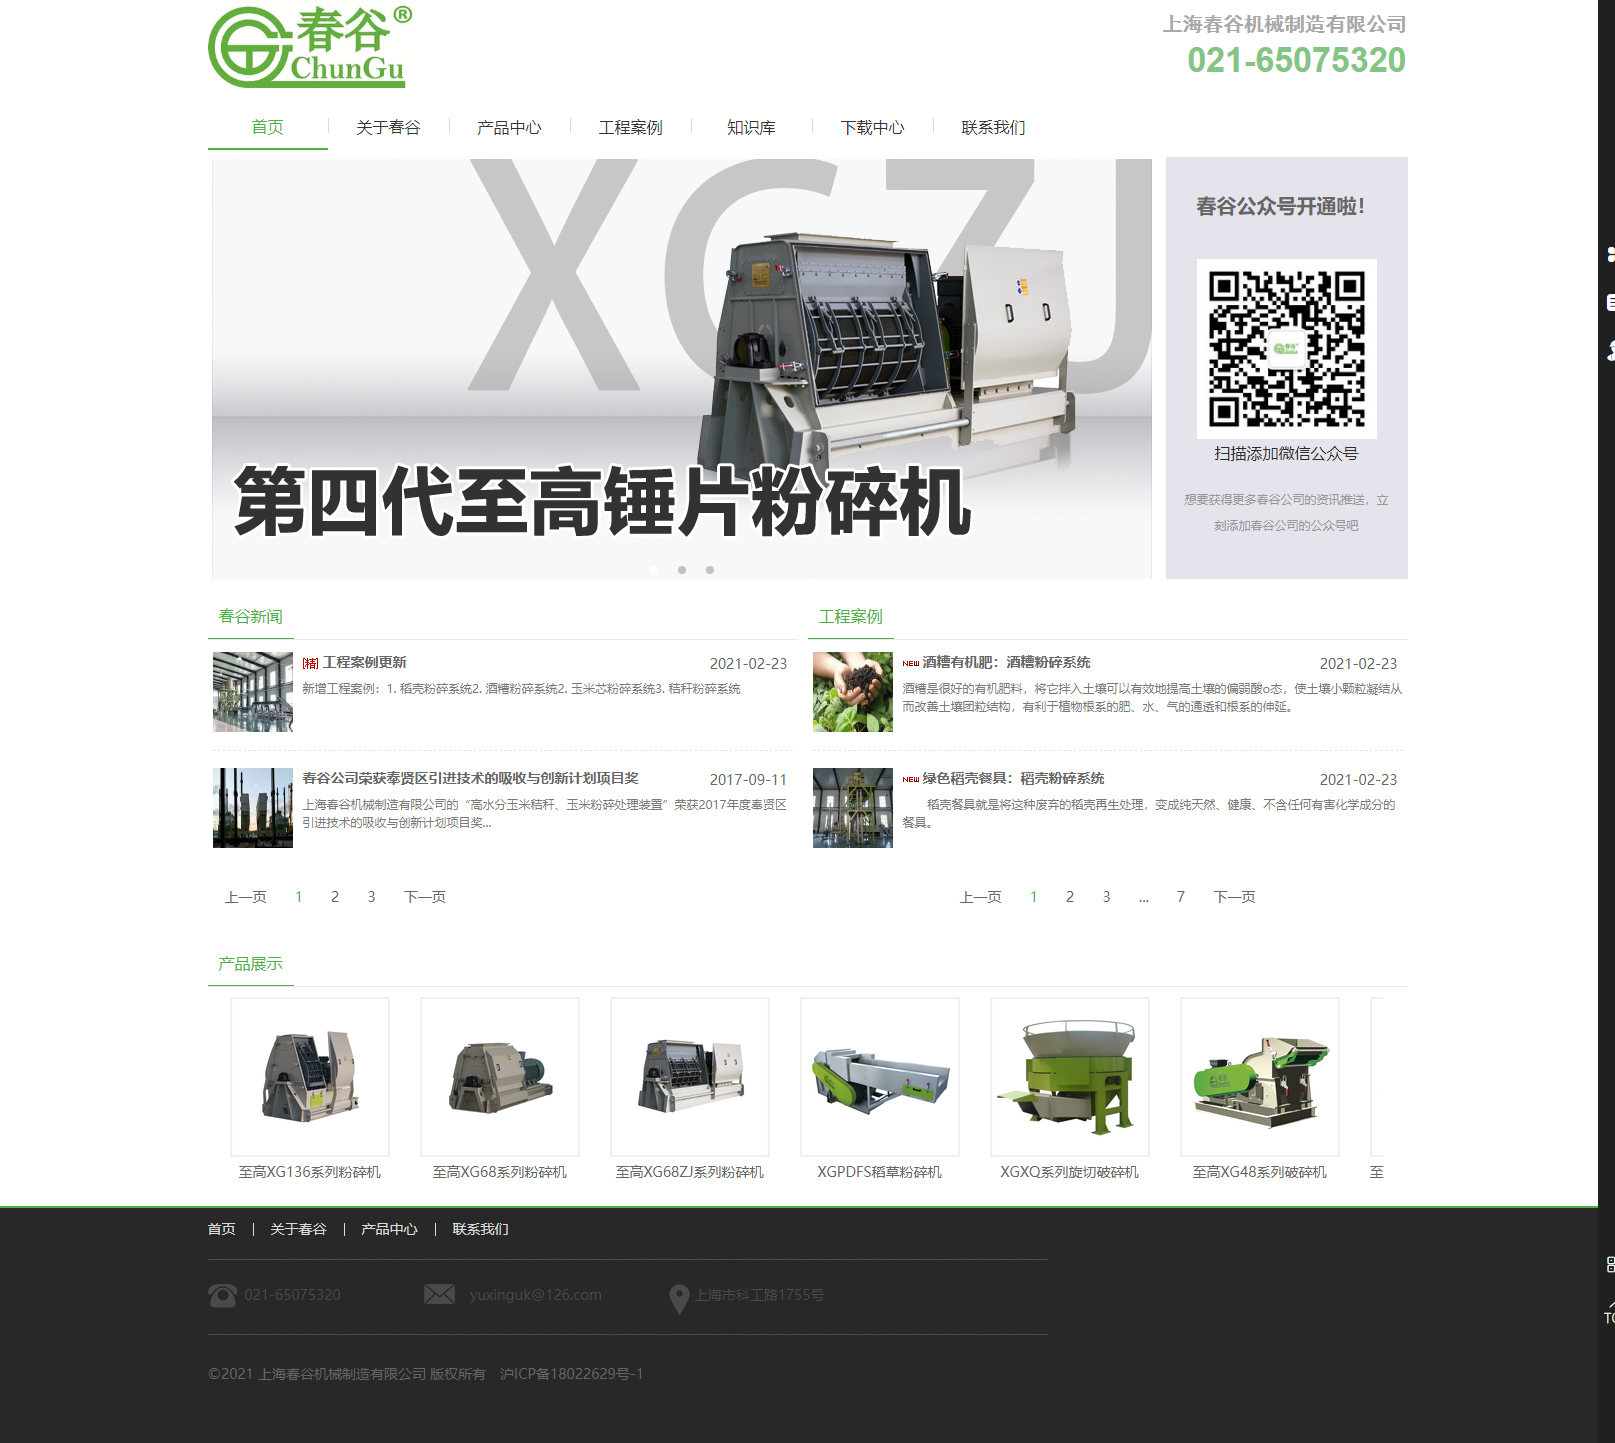 上海春谷机械制造有限公司网站案例